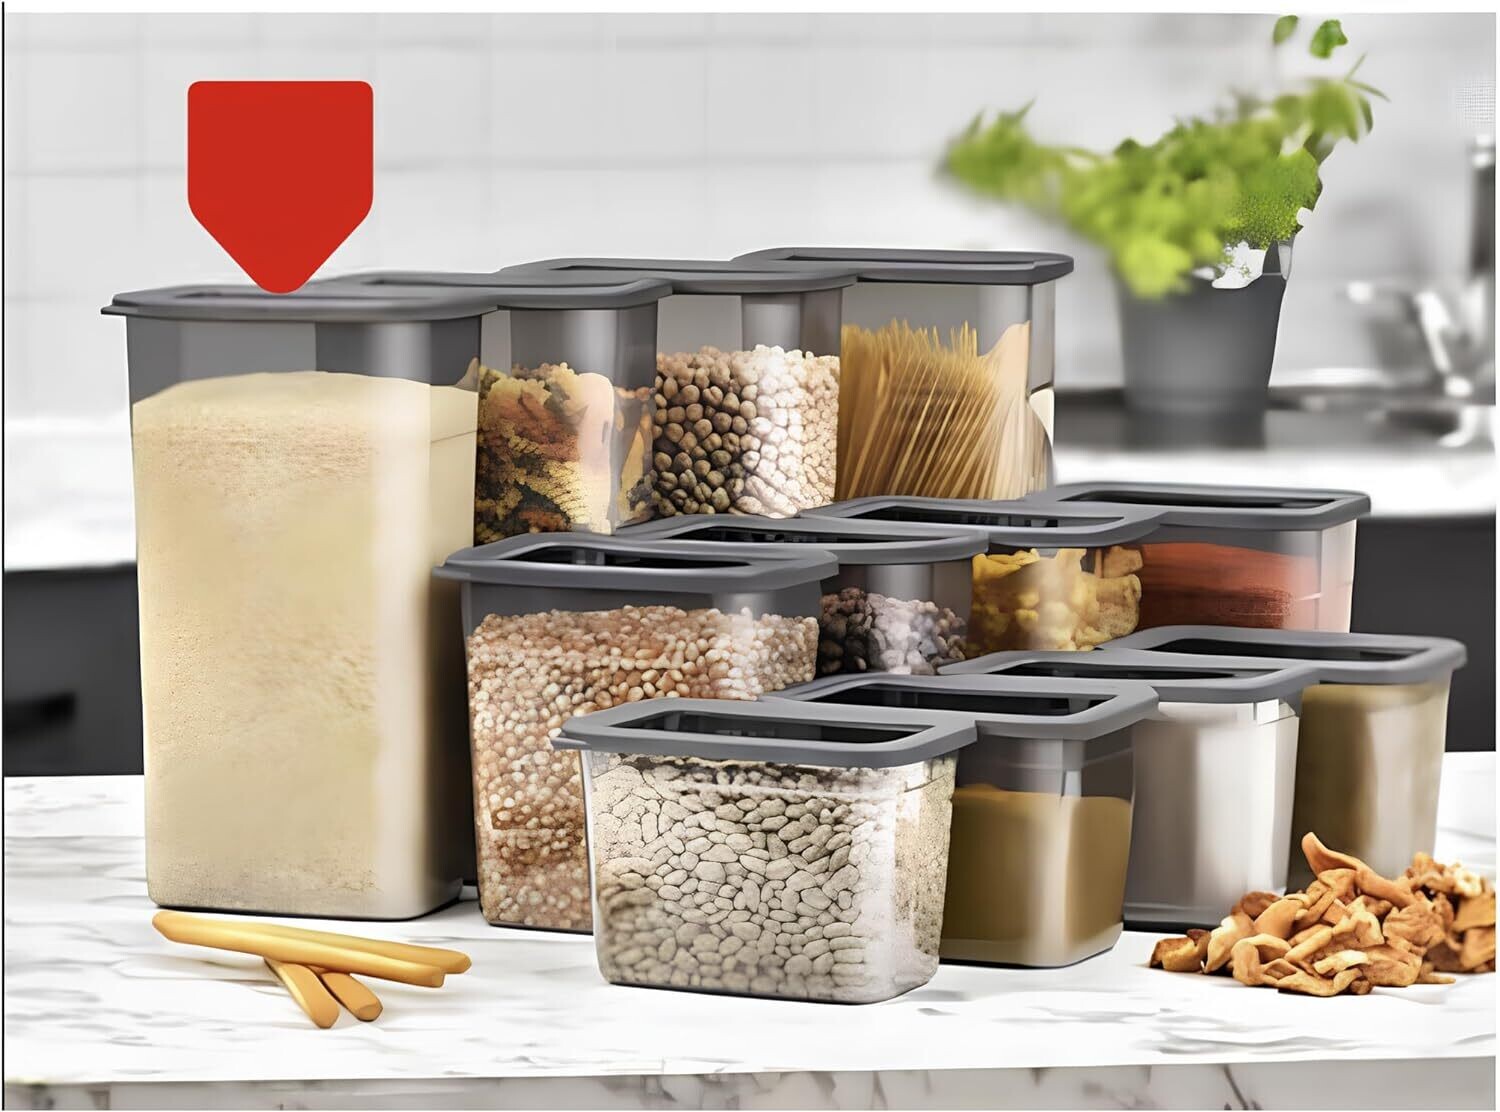 24tlg. Küche Aufbewahrungsboxen Set | Kunststoff BPA frei Vorratsdosen mit Deckel | Aufbewahrung & Organisation | Luftdicht Frischhaltedosen Grau